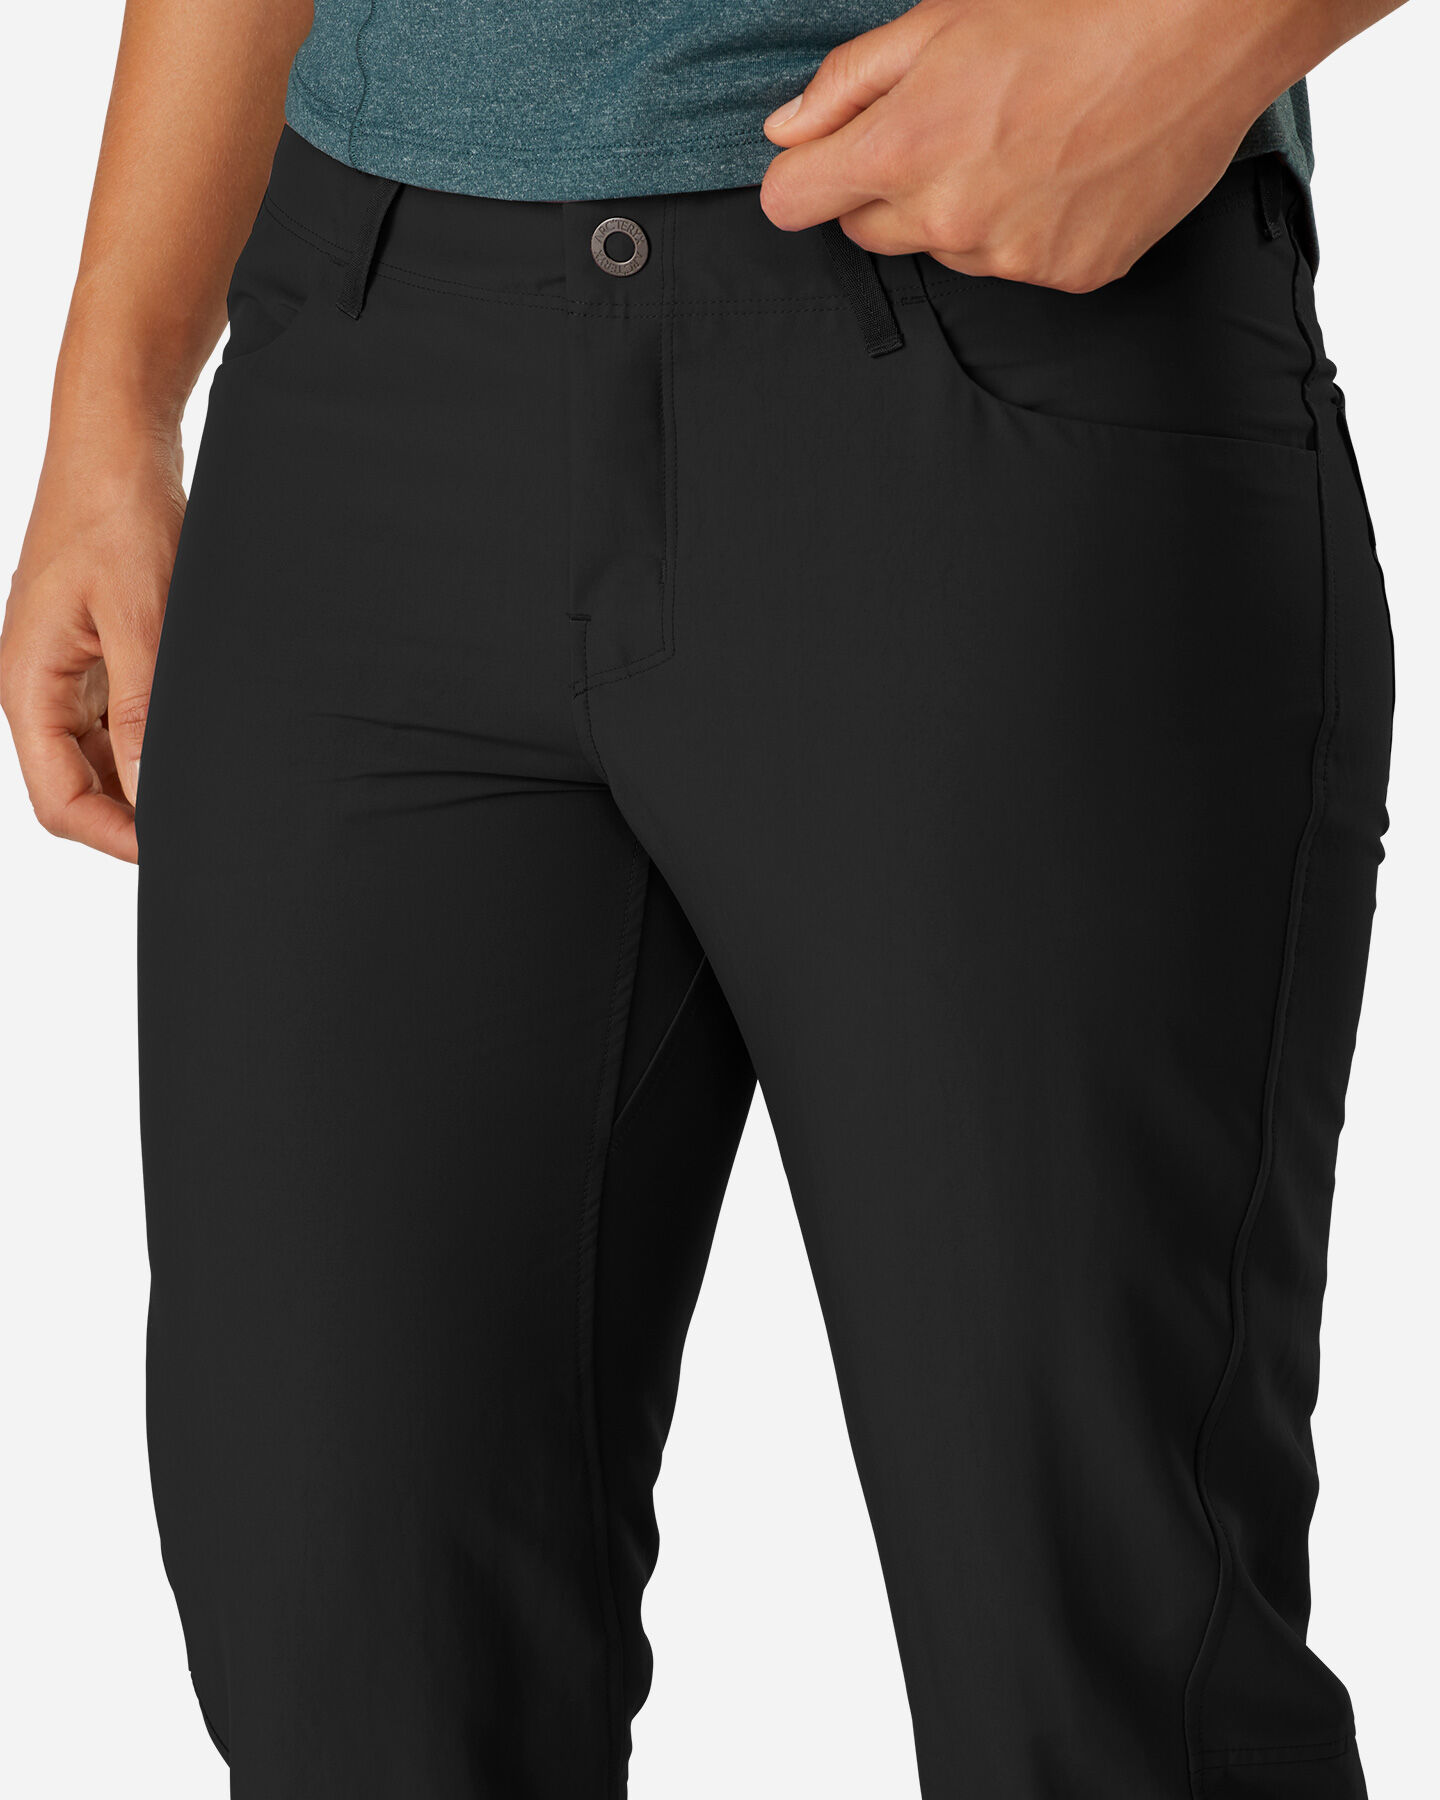  Pantalone outdoor ARC'TERYX CRESTON W S4075249|1|4 scatto 4